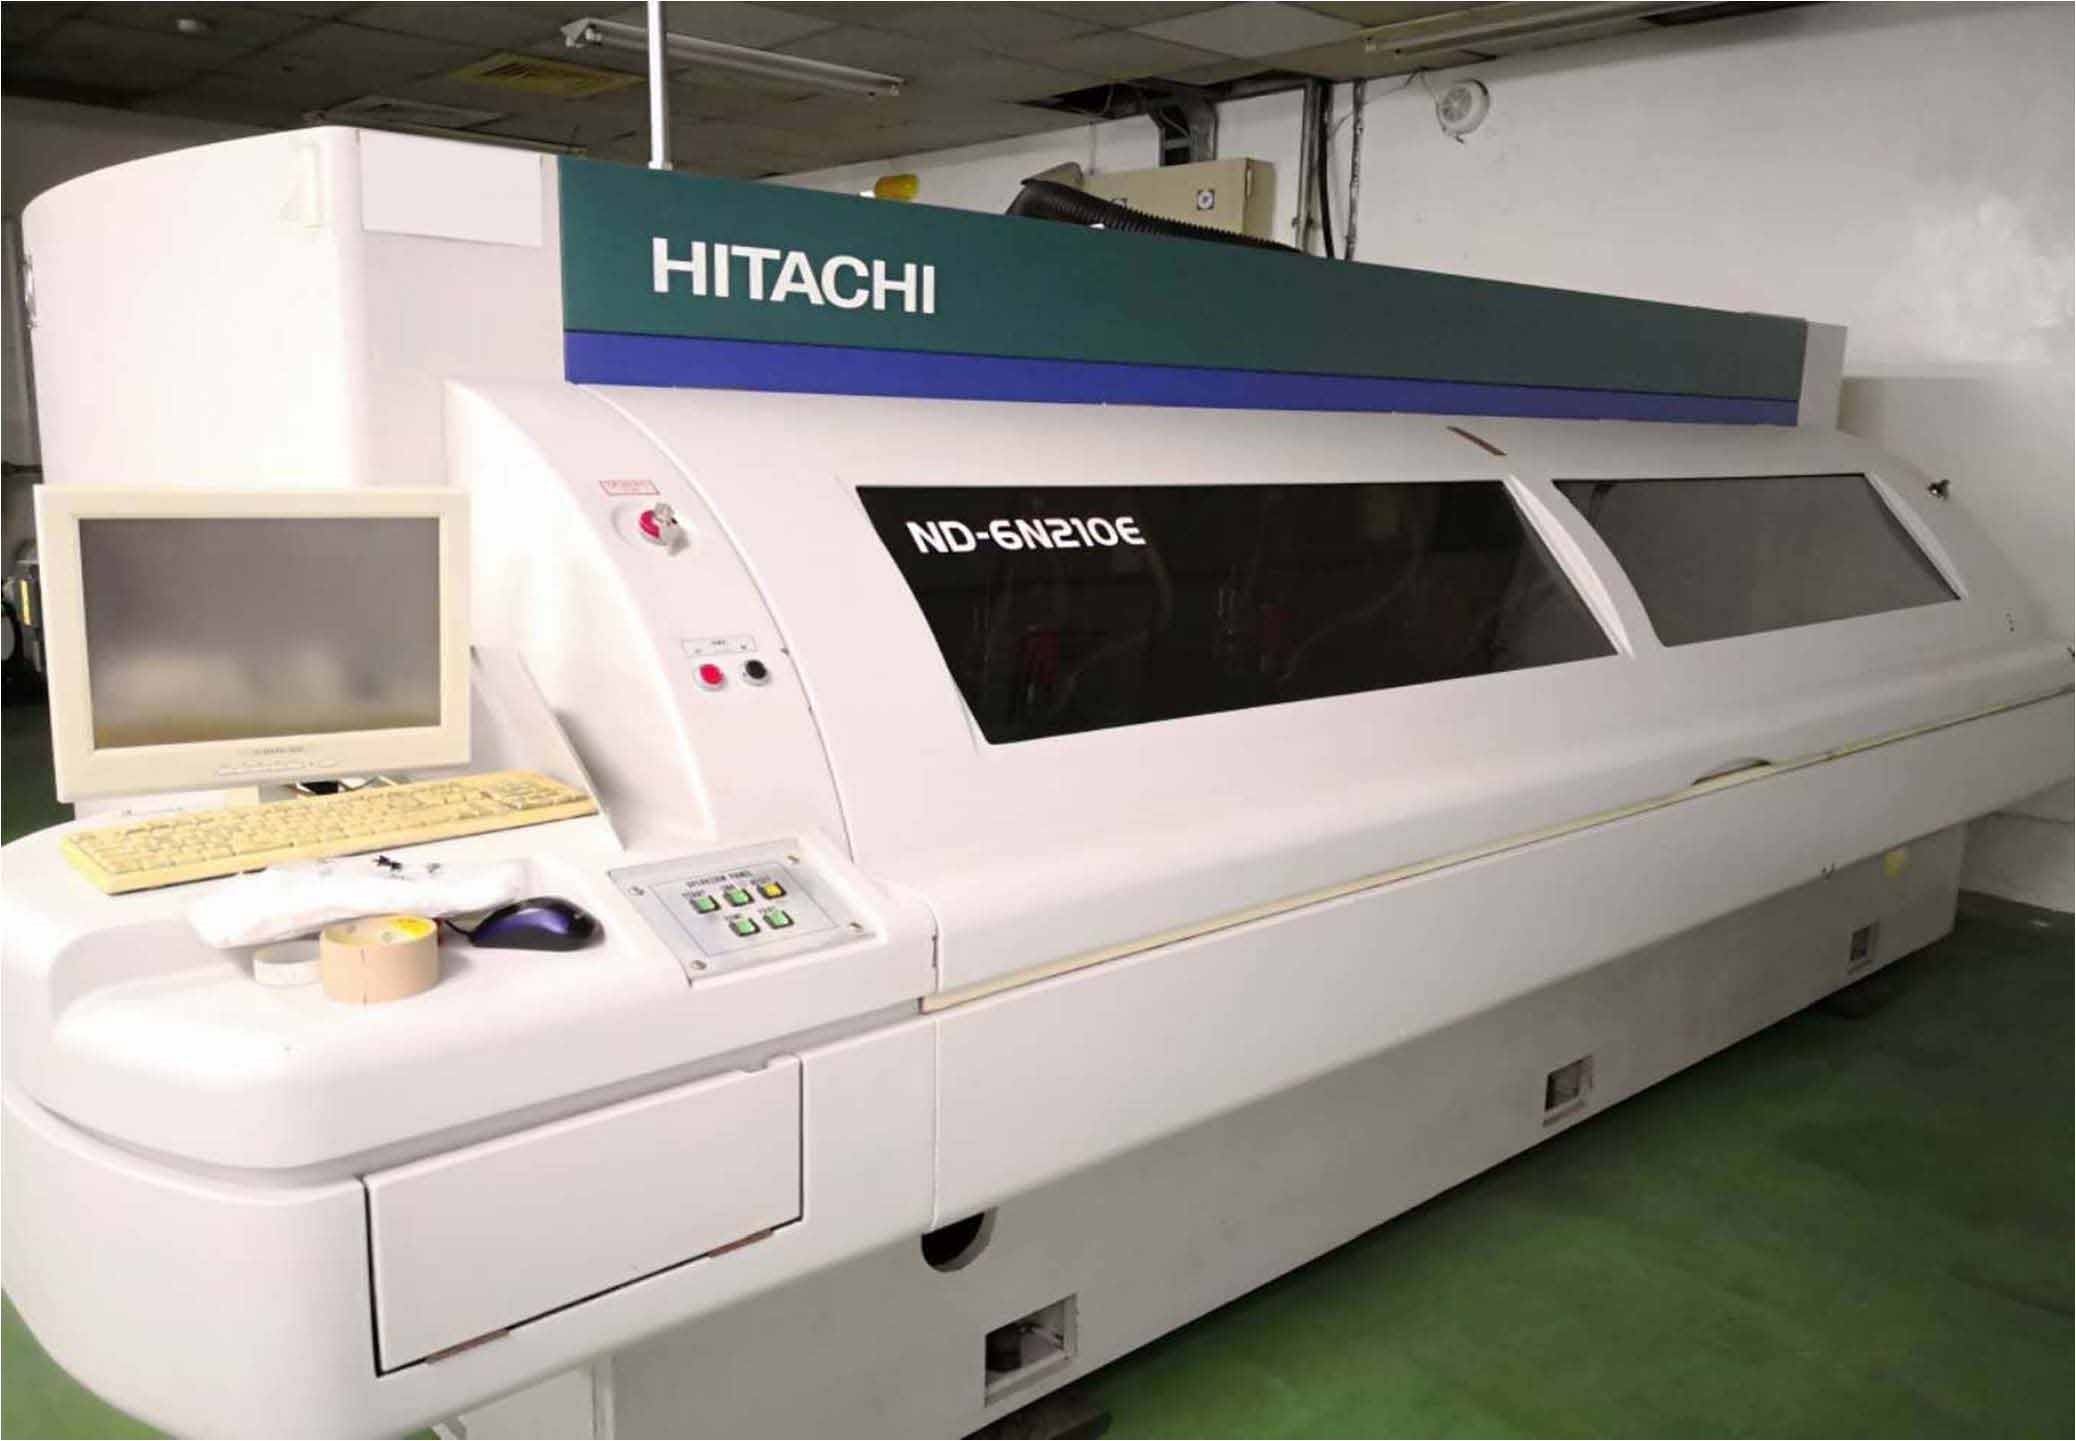 HITACHI ND-6N210E